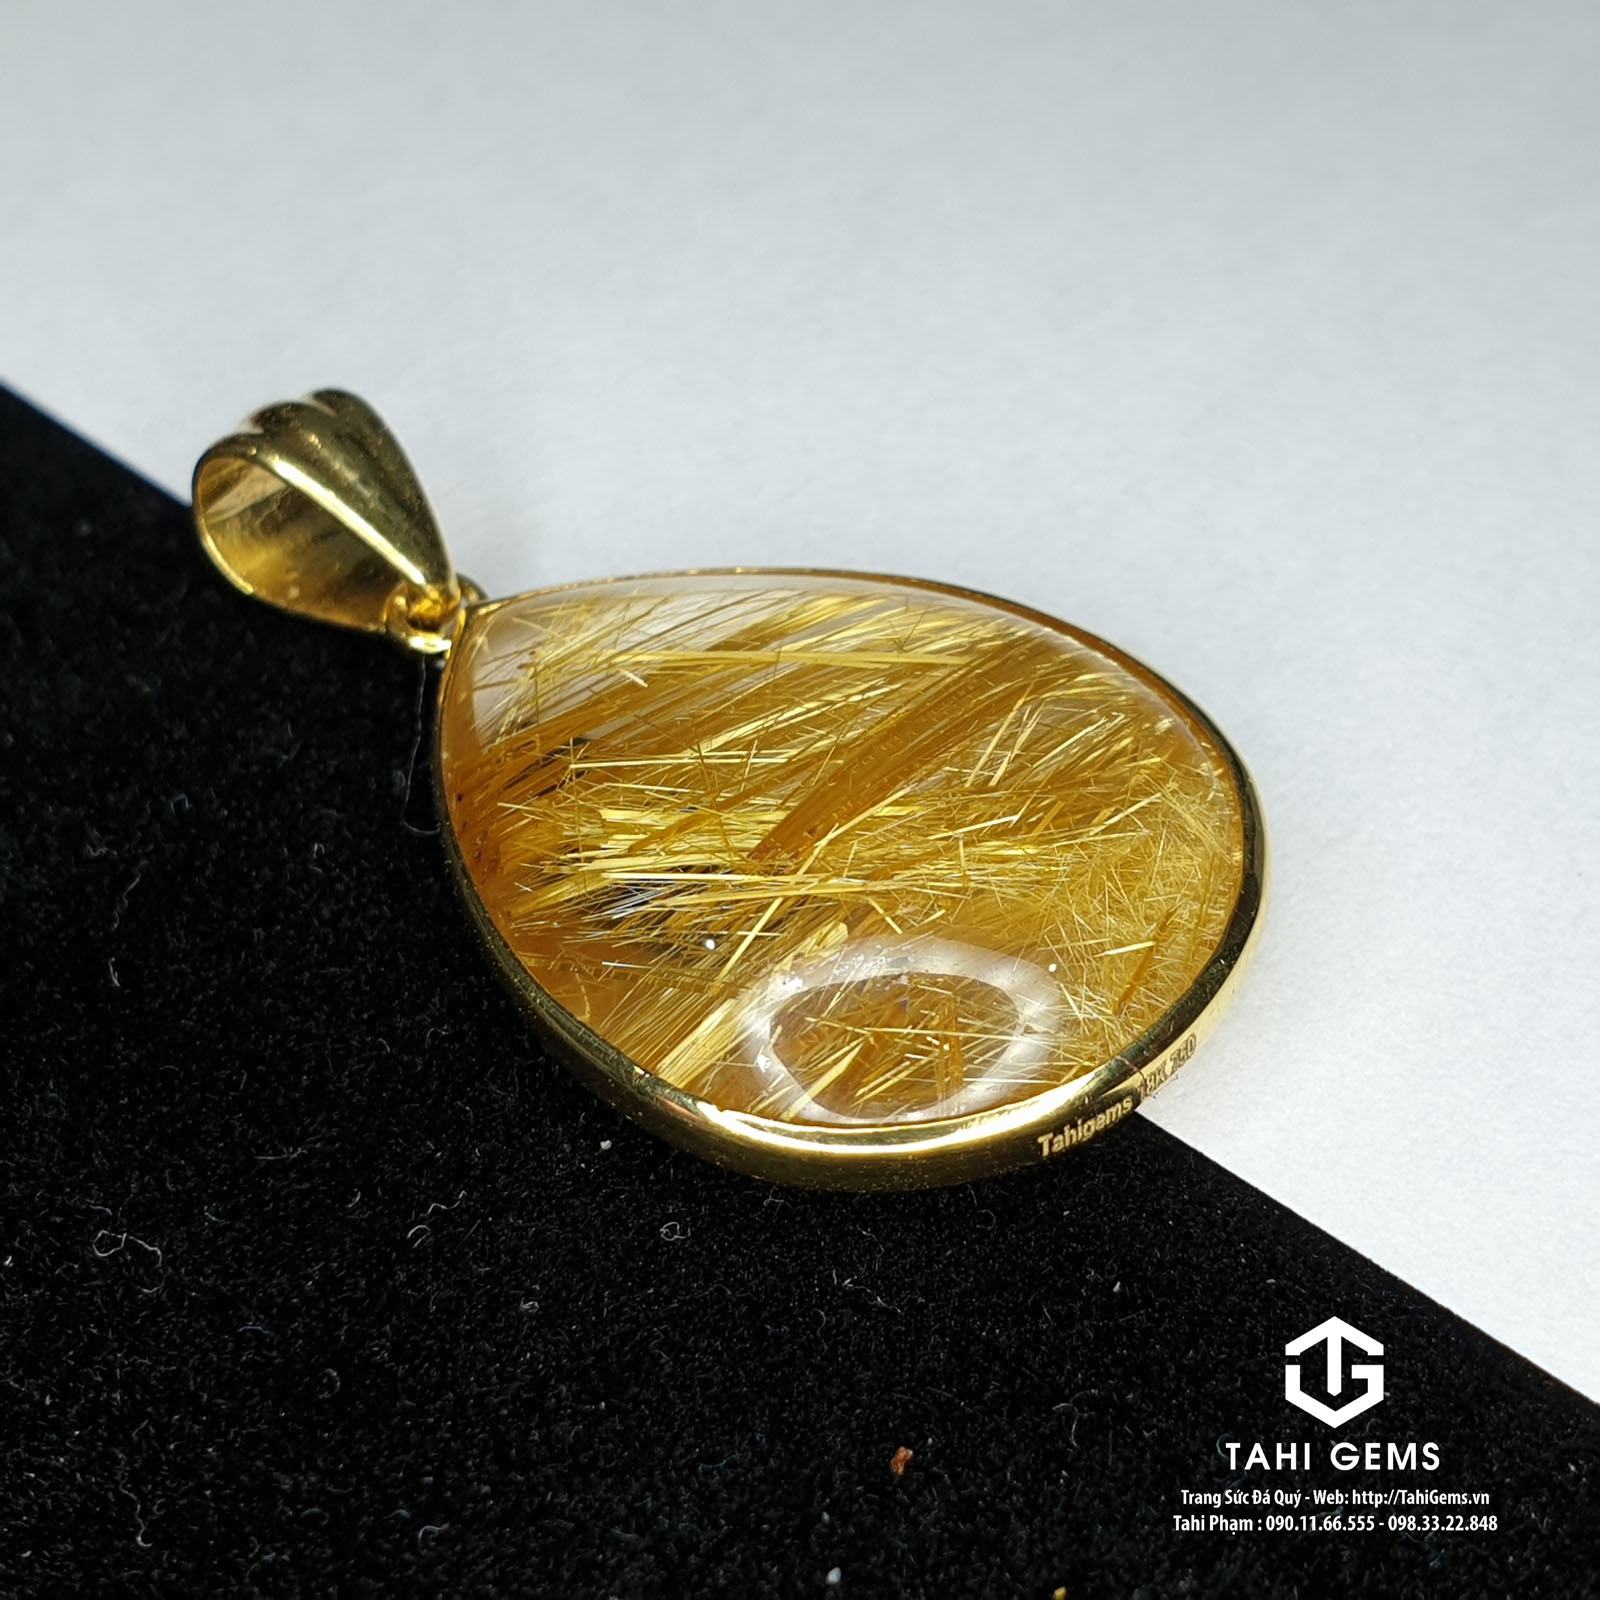 Tahi 5240 - Mặt dây chuyền đá quý thạch anh tóc vàng trạm viền vàng